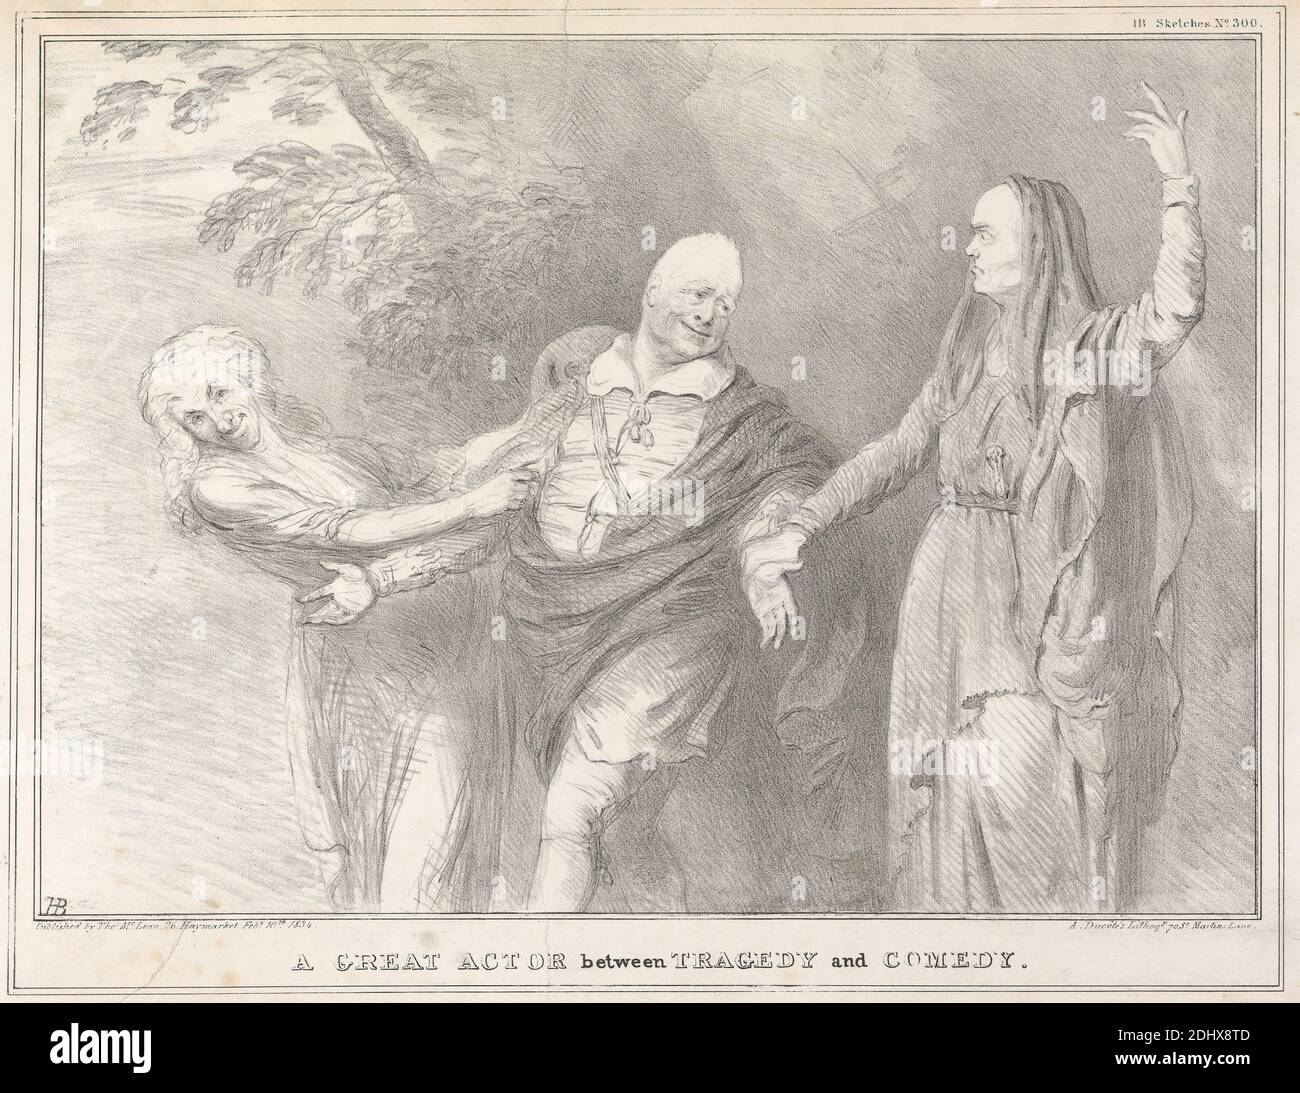 A Great Actor Between Tragedy and Comedy, Stampa di John Doyle ('H.B.'), 1797–1868, irlandese, stampato da A. Ducôte, attivo 1832–1840, inglese, pubblicato da Thomas McLean, 1788–1875, inglese, 1834, litografia su carta in wove beige di spessore moderato, leggermente testurizzata, foglio: 11 3/16 x 16 5/16 pollici (28.4 x 41.4 cm) e immagine: 9 1/8 x 12 11/16 pollici (23.2 x 32.2 cm), attore, caps, guardaroba, commedia, gesturing, holding, tema letterario, uomo, parodia, posa, trazione, satira, palco, teatro, tragedia, alberi Foto Stock